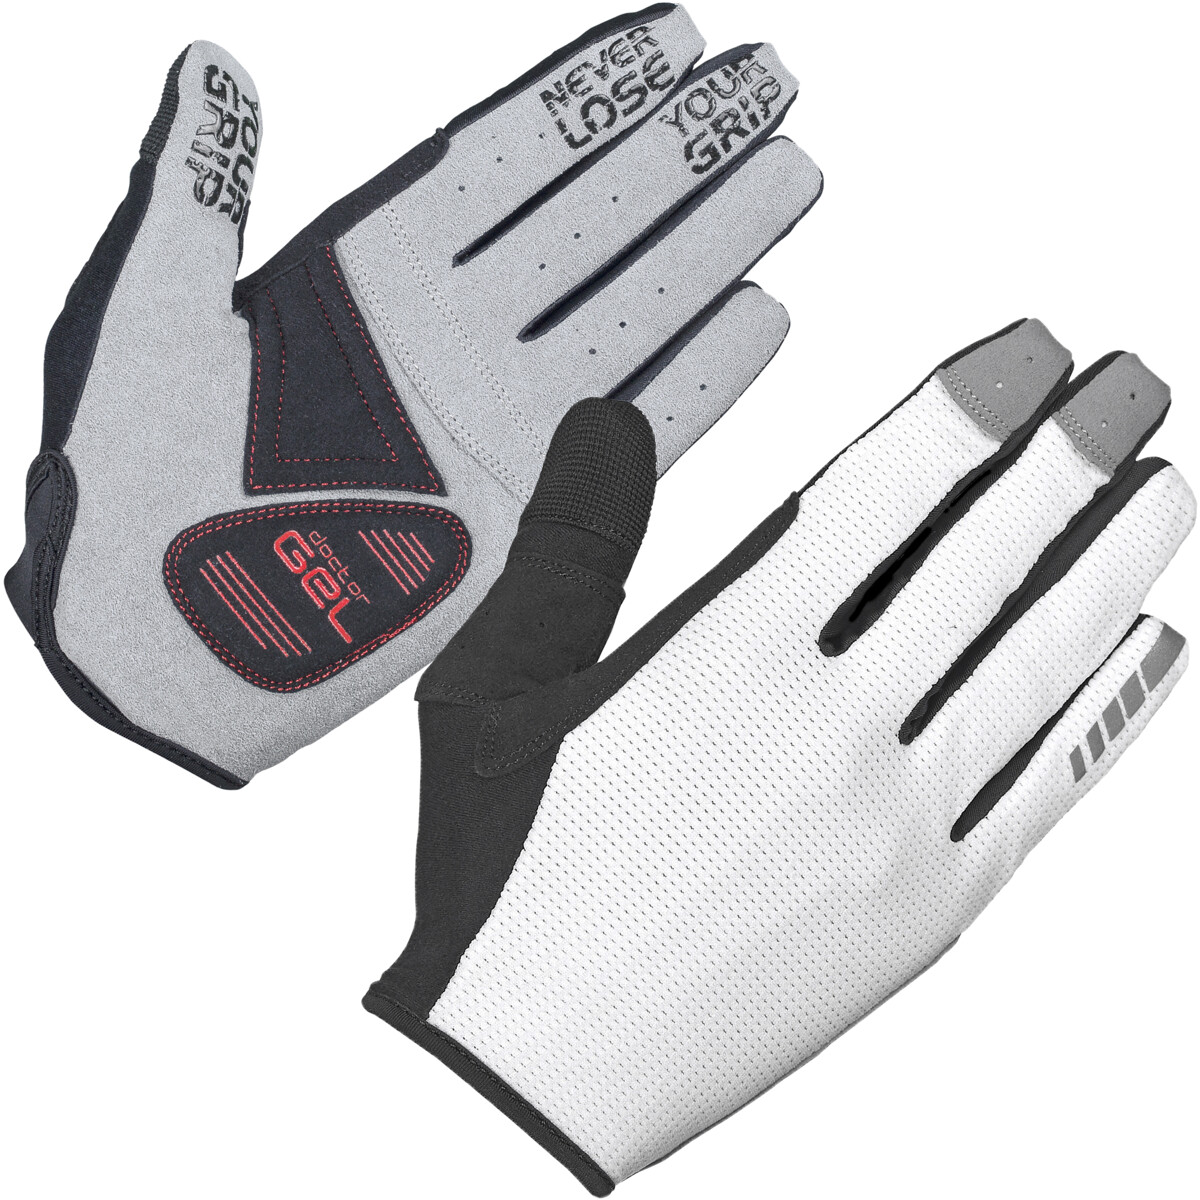 Shark handsker Hvid - M | GripGrab | varenr.: 104302015 | Køb